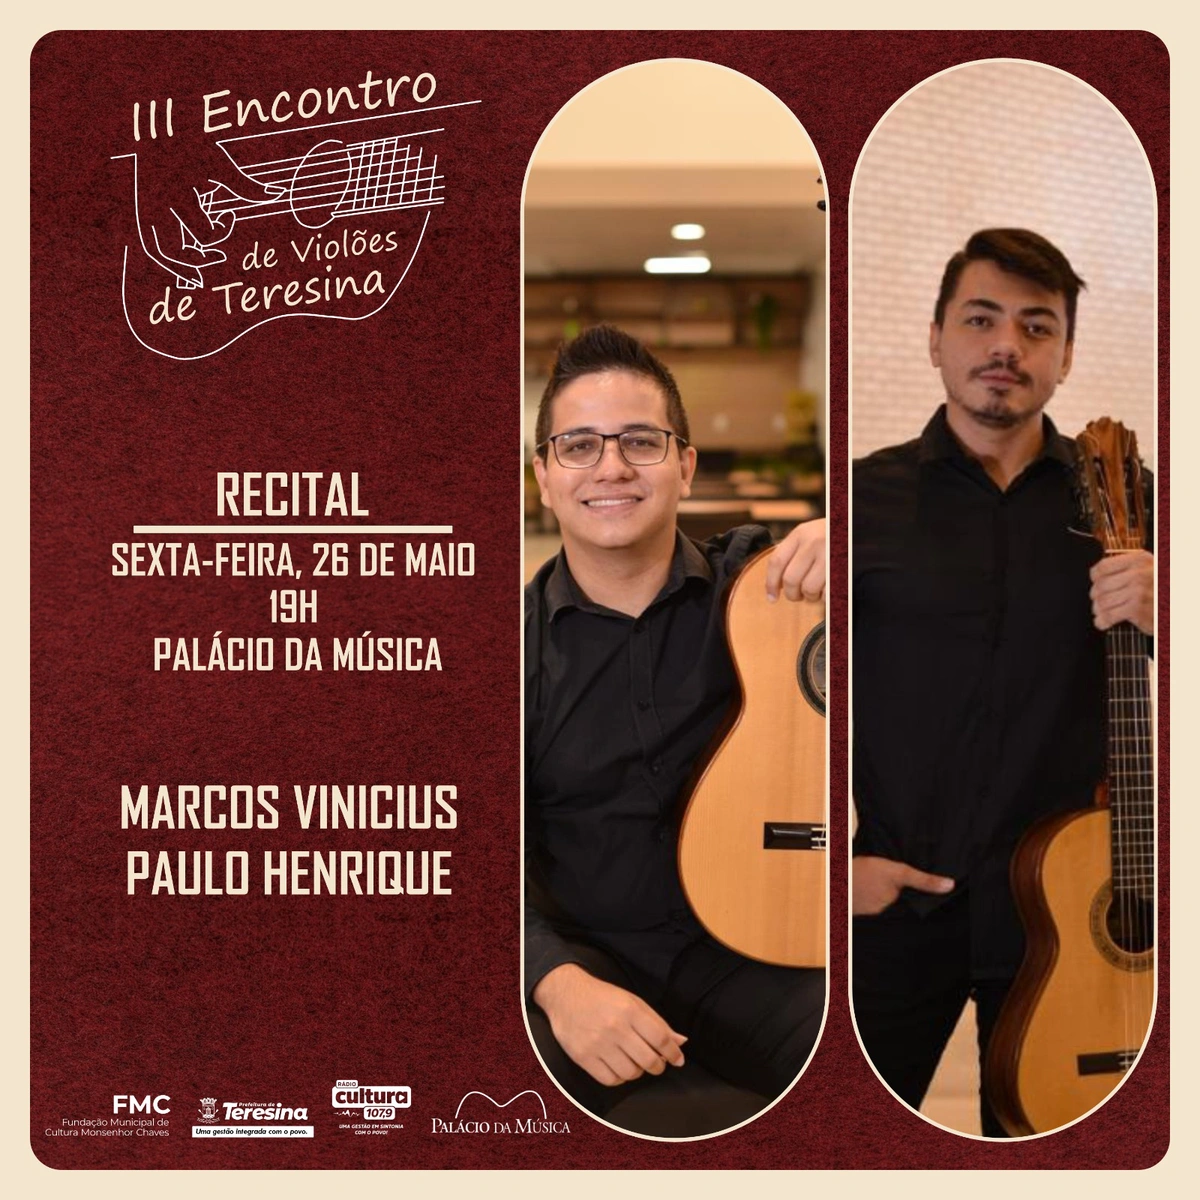 Recital contará com a presença de Marcos Vinicius e Paulo Henrique